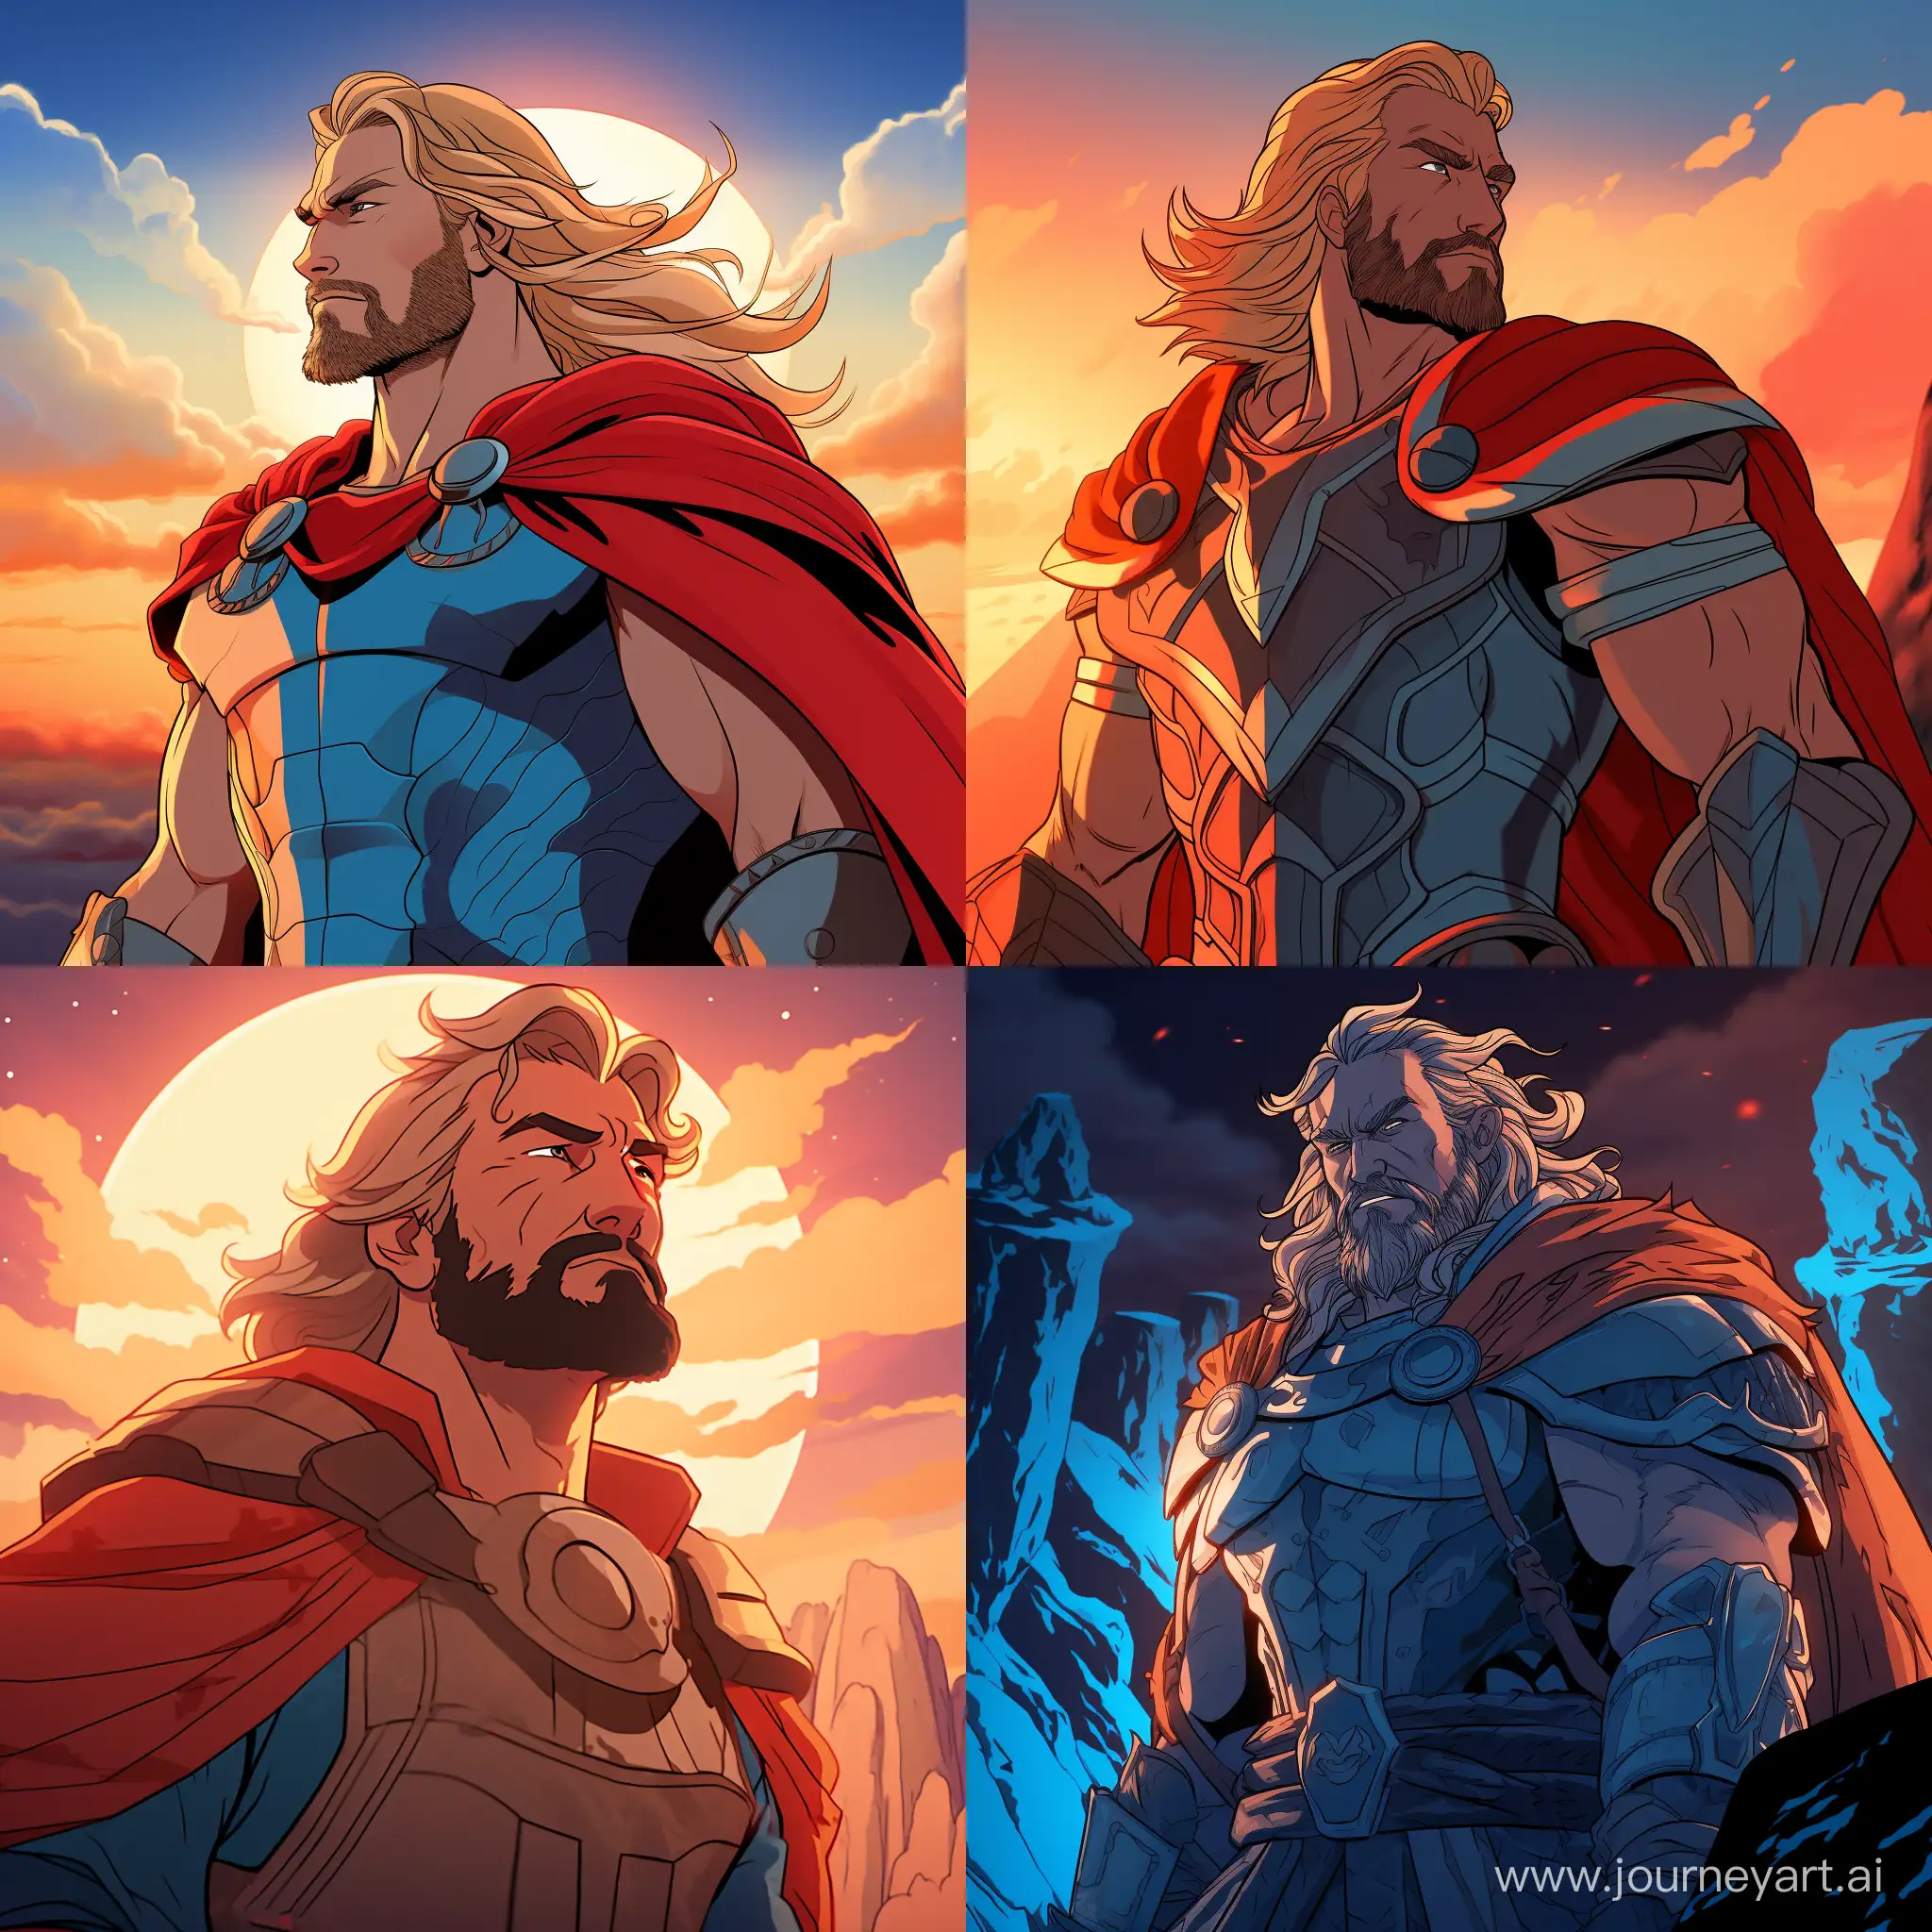 Thor cel shading animation style